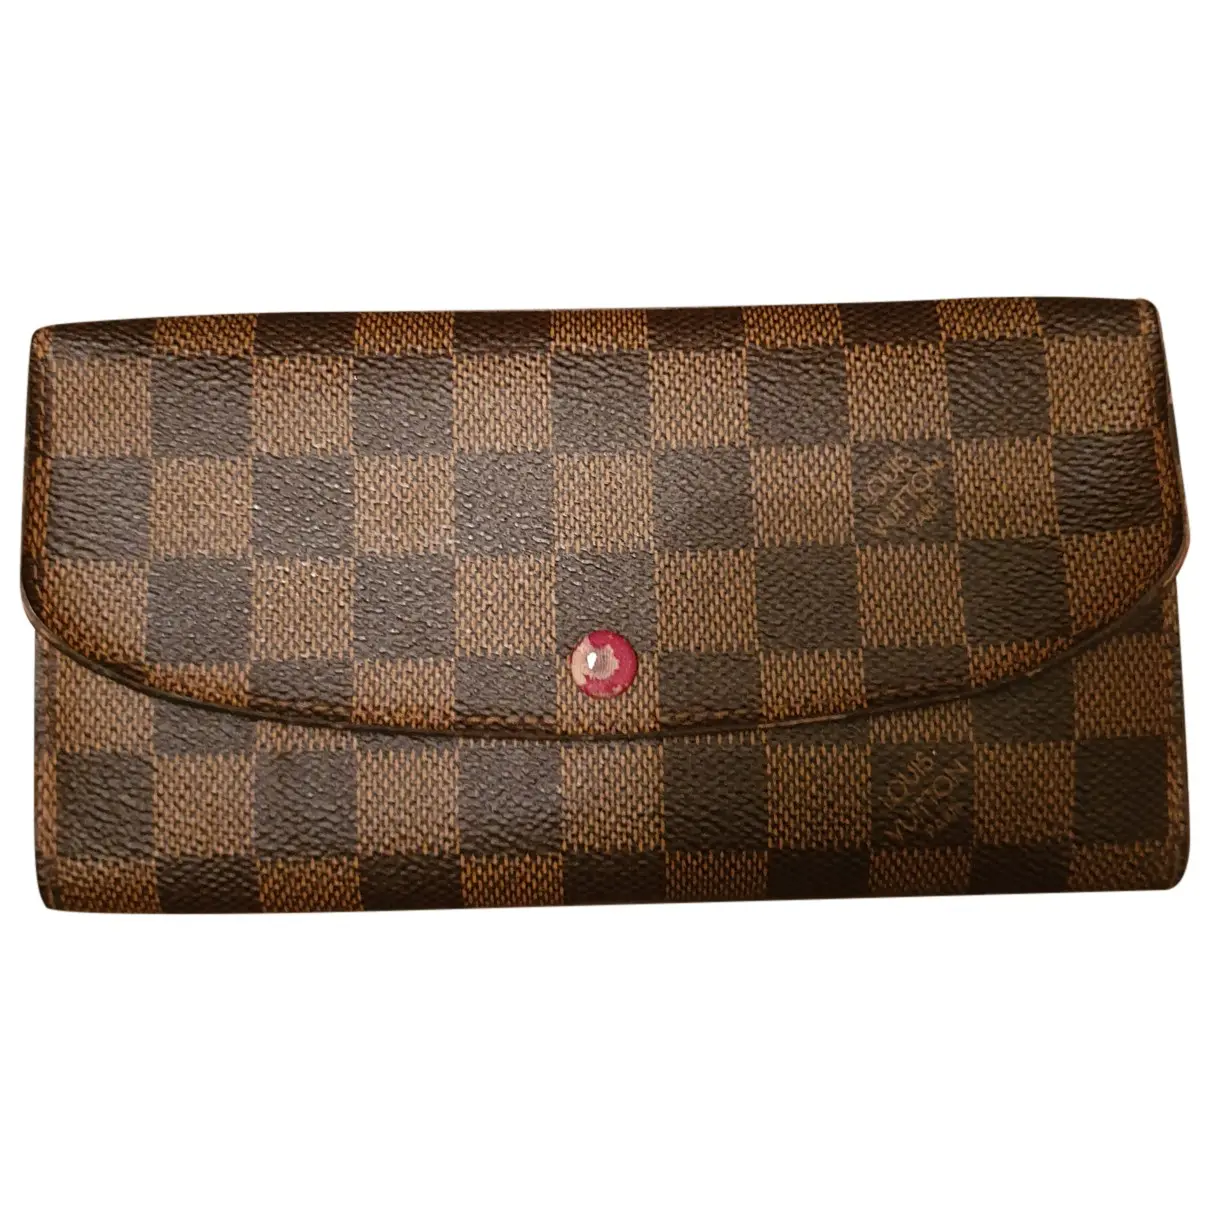 Emilie cloth wallet Louis Vuitton